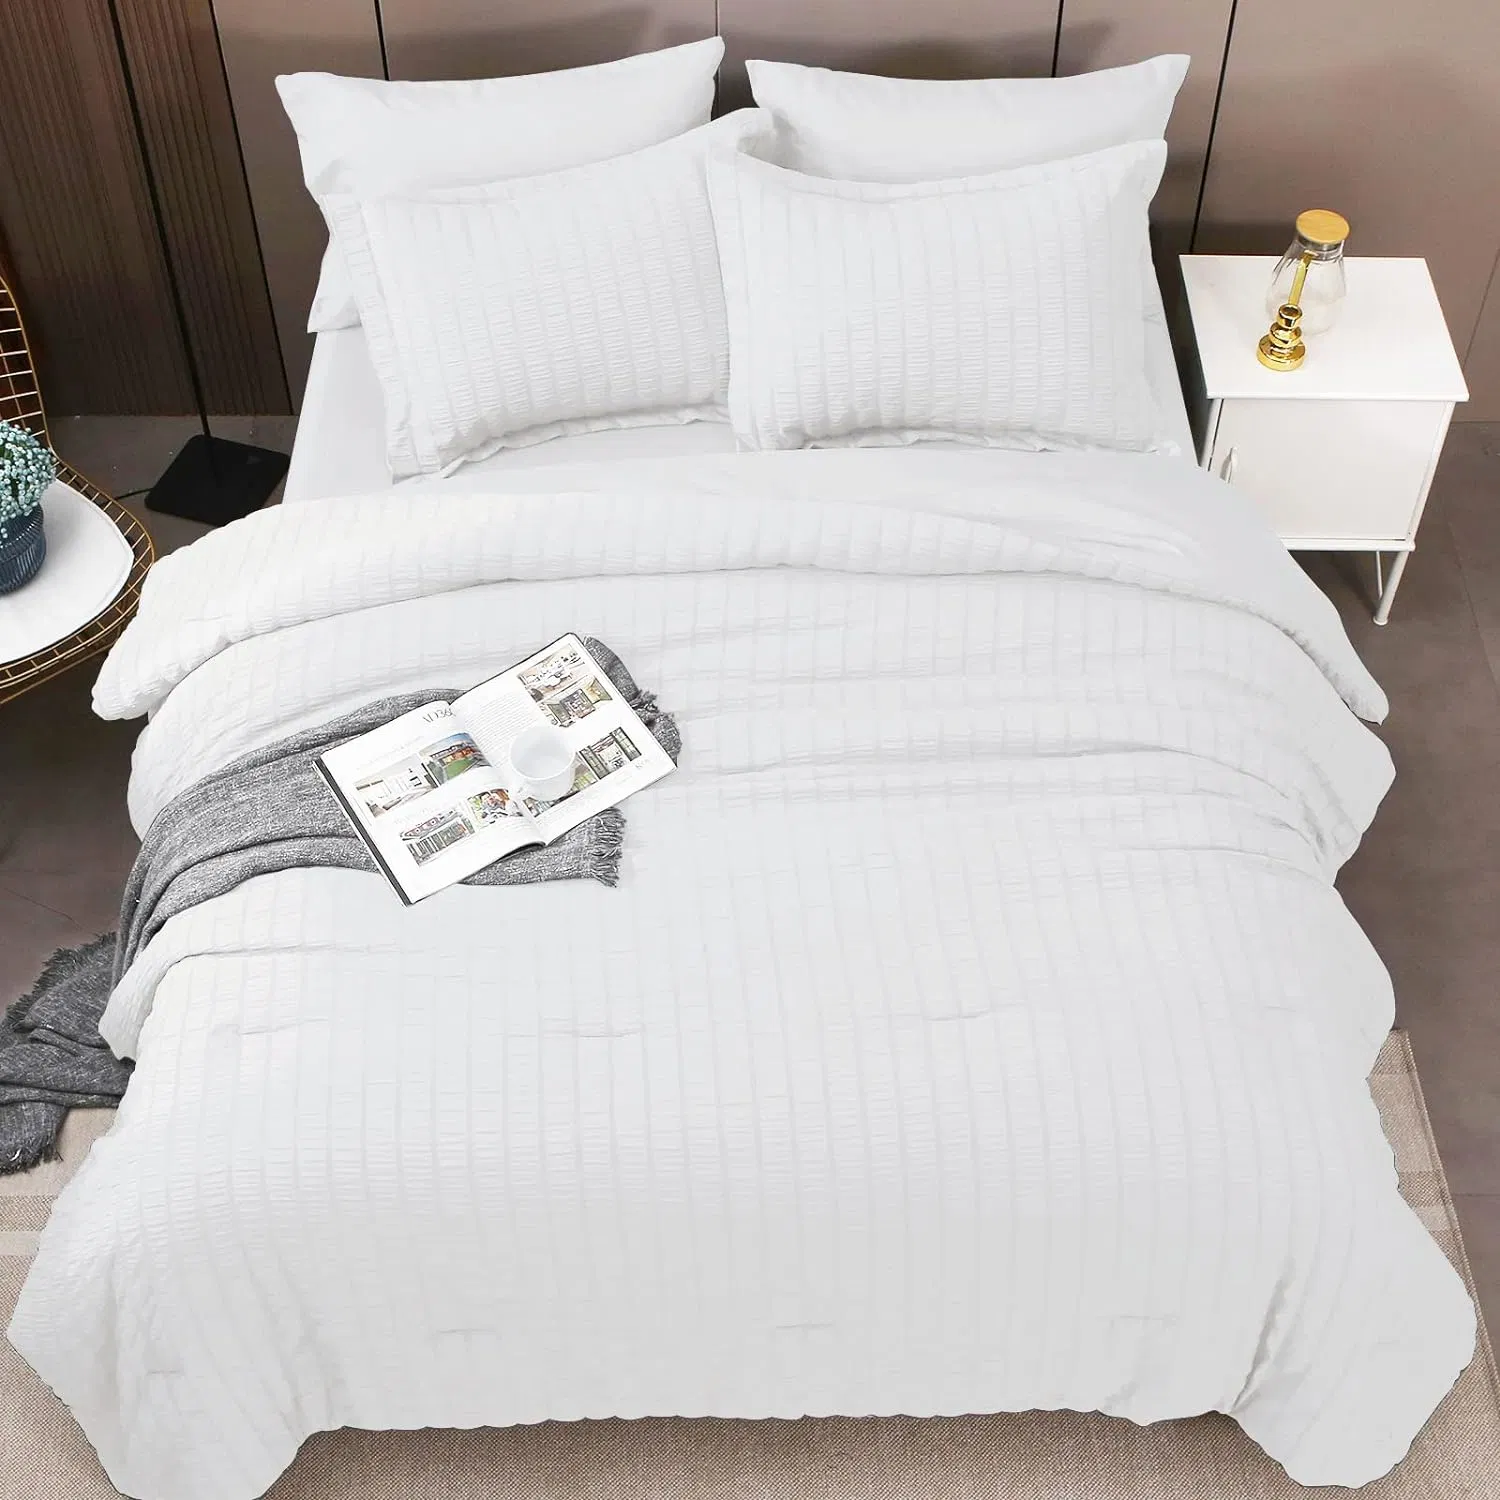 Conjunto de comforter Queen Branco seersucker 7 peças de roupa de cama conjunto com edredons, folhas, fronhas e Shams Cama em um saco para quarto